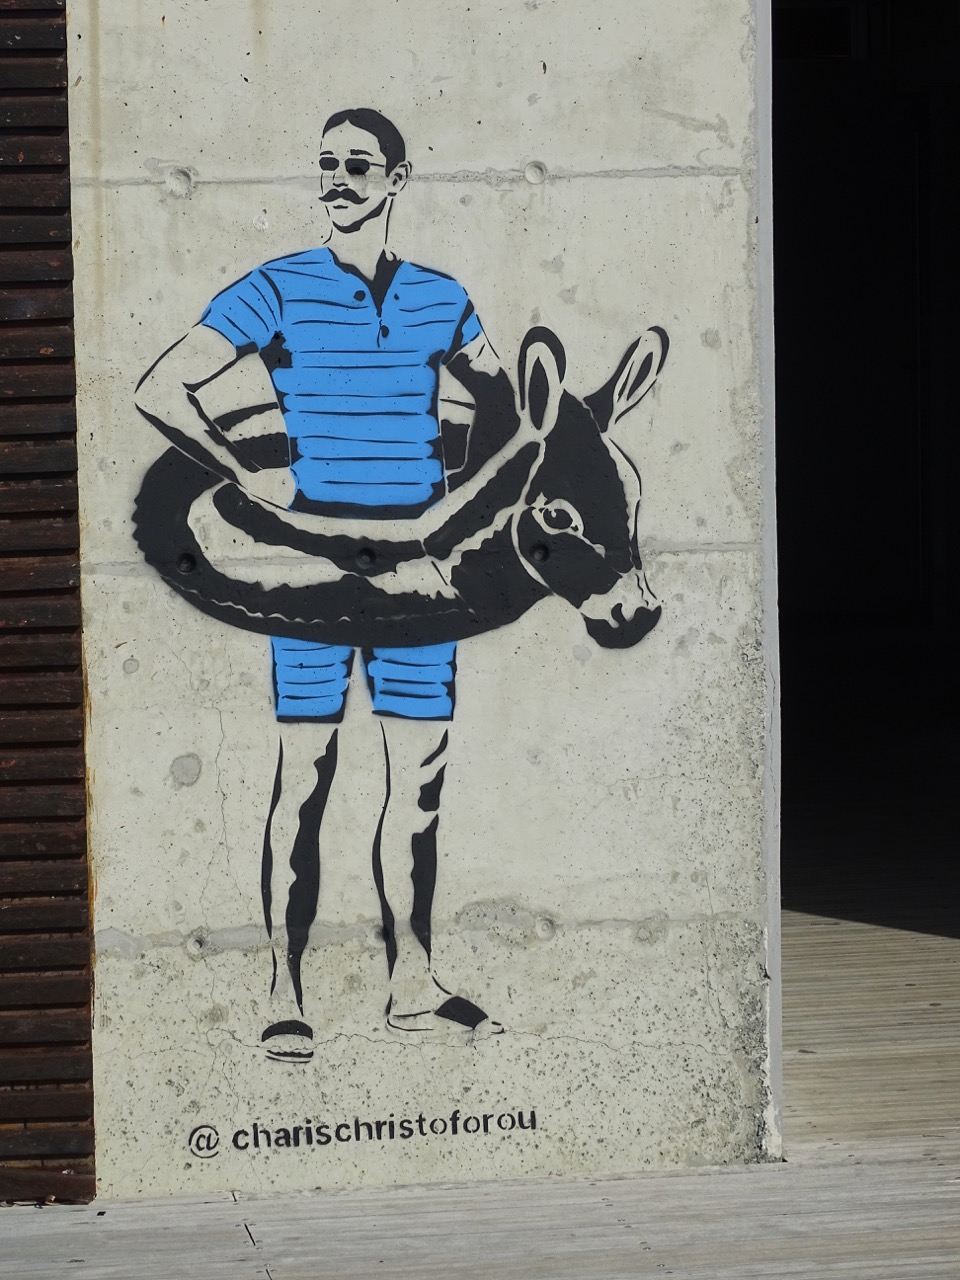 Charis Christoforou street artist